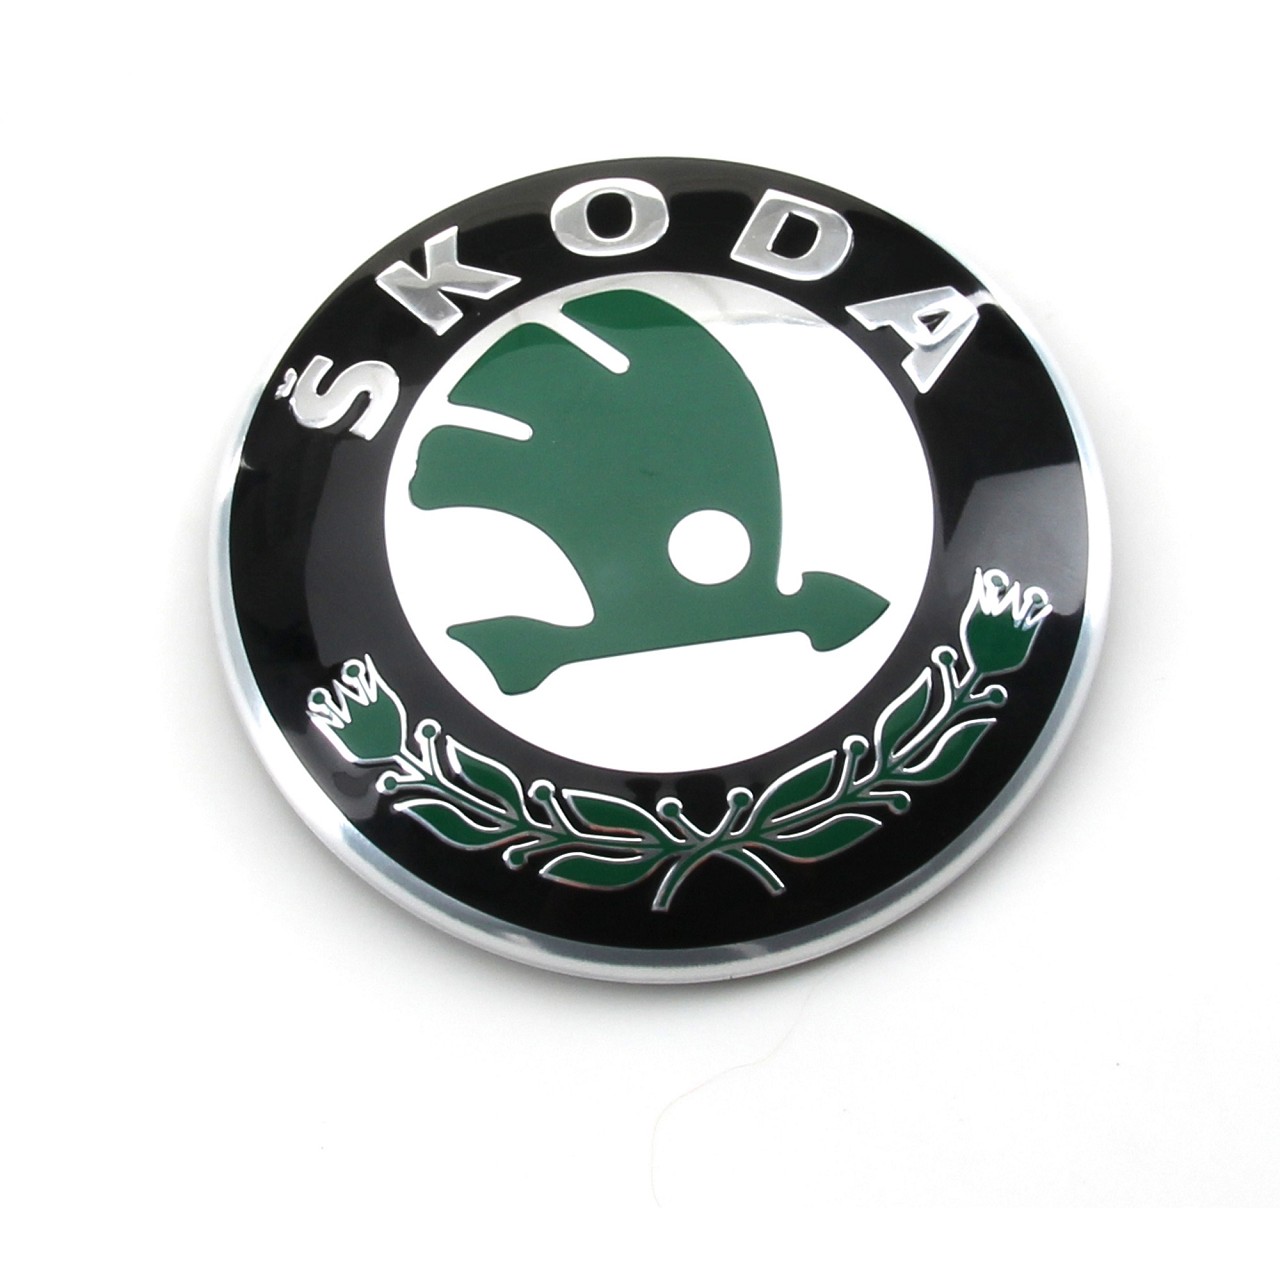 ORIGINAL Skoda Emblem Plakette Fabia Octavia Rapid Roomster Superb Yeti vorne